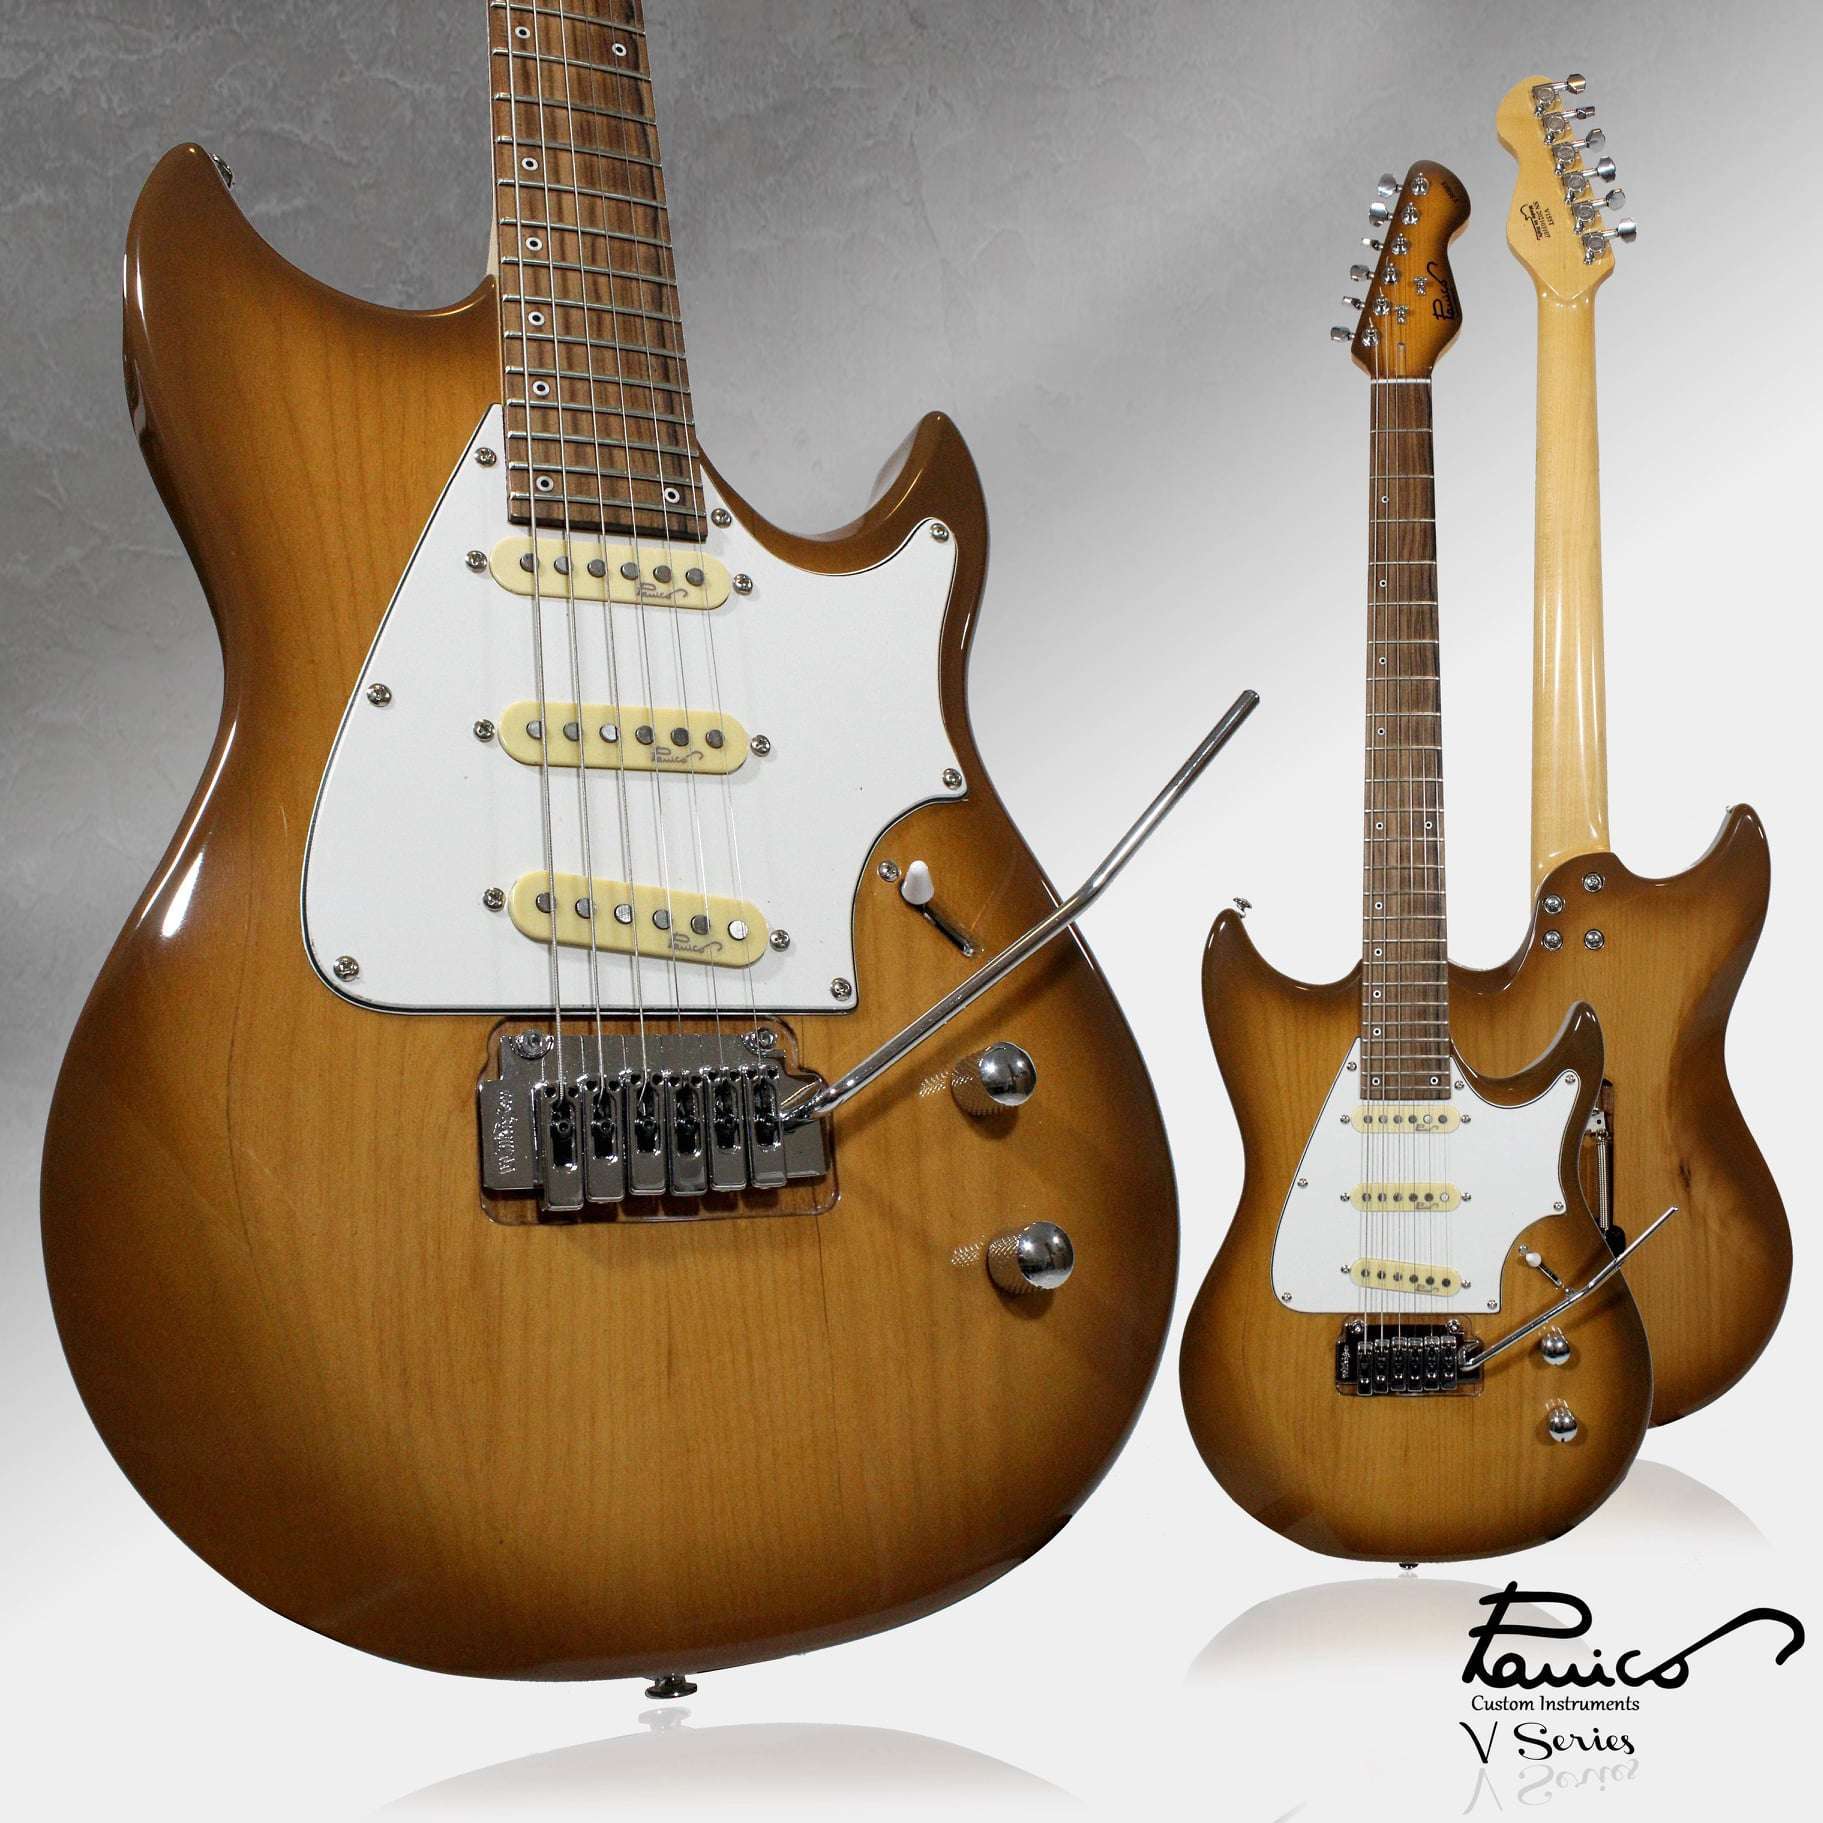 Modelli V Series Panico Guitars